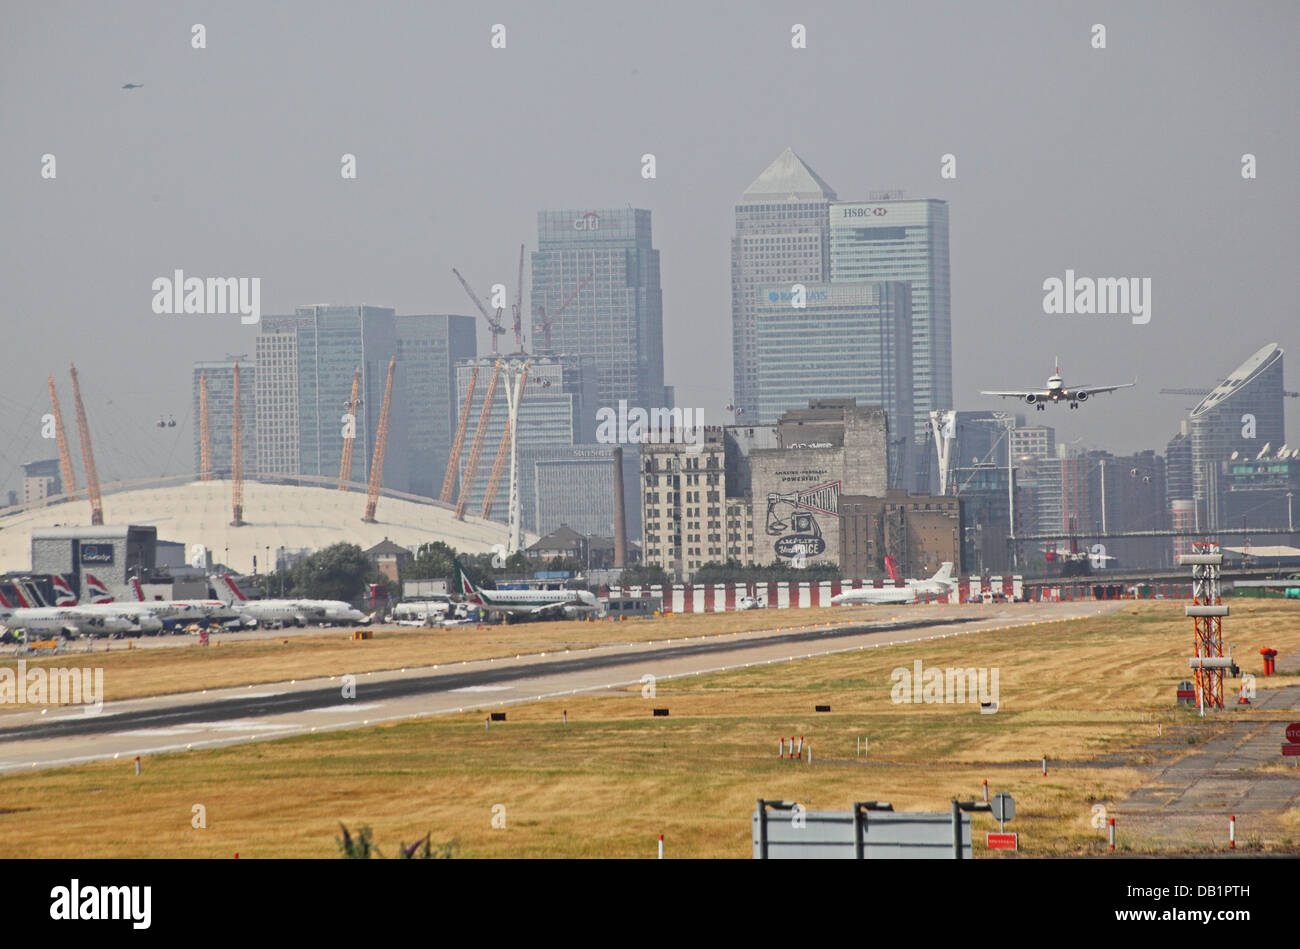 British Airways-Passagier-Jet landet auf dem Flughafen London City. Canary Wharf und den Millennium Dome im Hintergrund Stockfoto